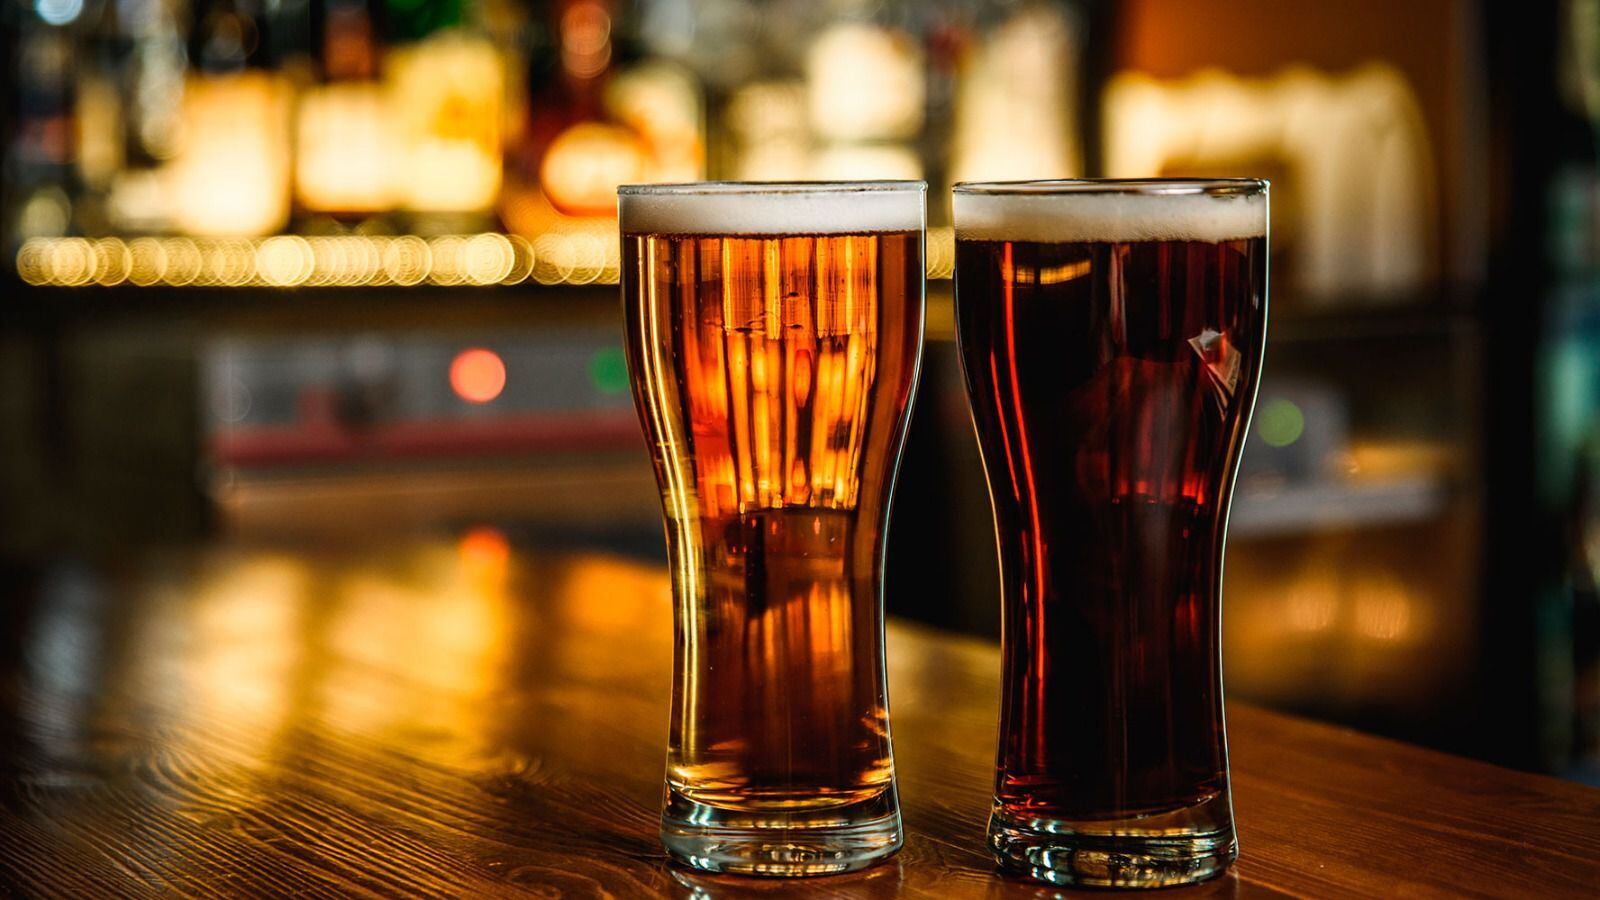 El sabor de las cervezas depende de su tipo de fermentación. (Foto: Shutterstock)